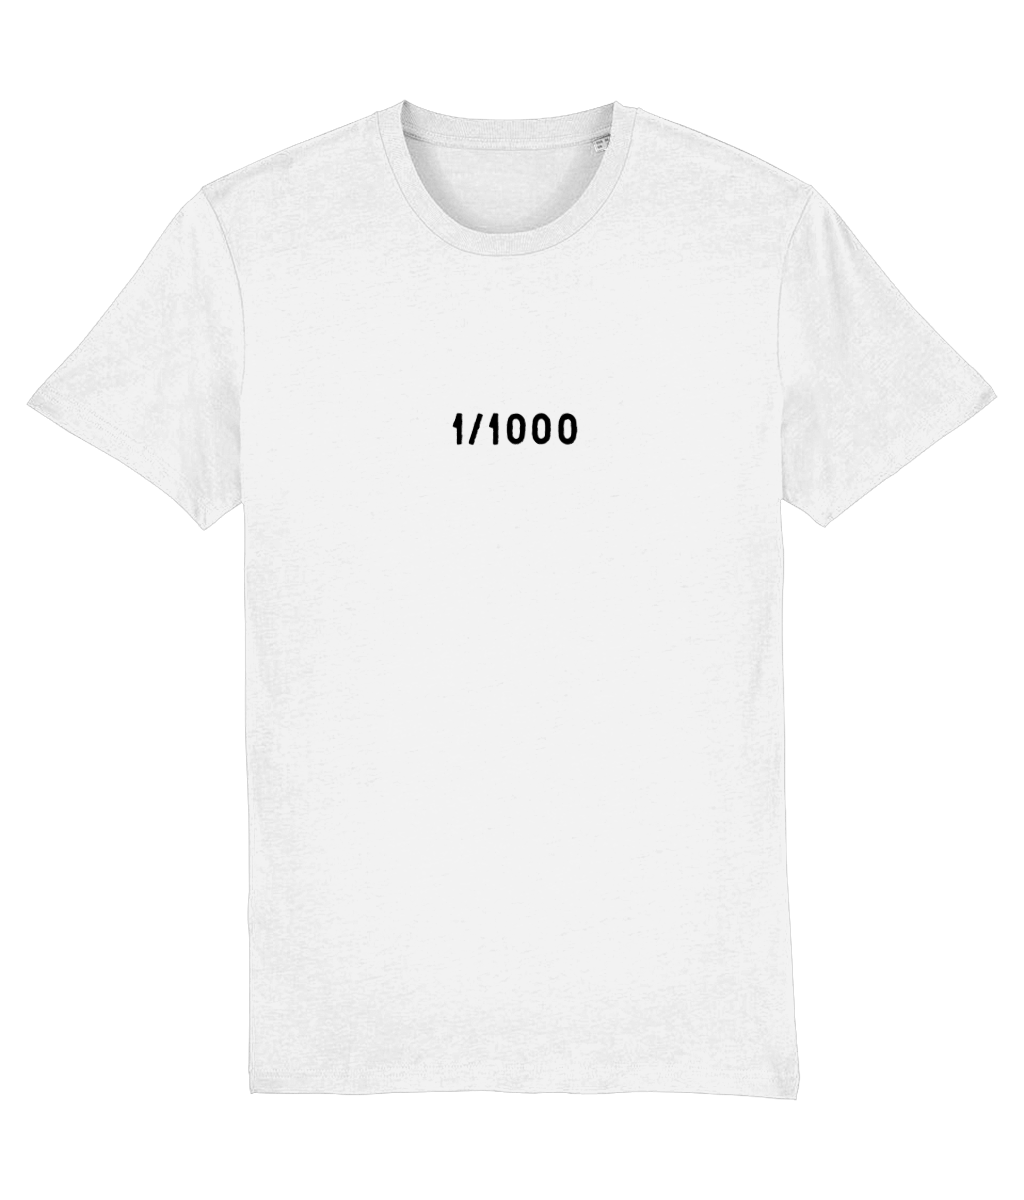 1/1000 t-shirt